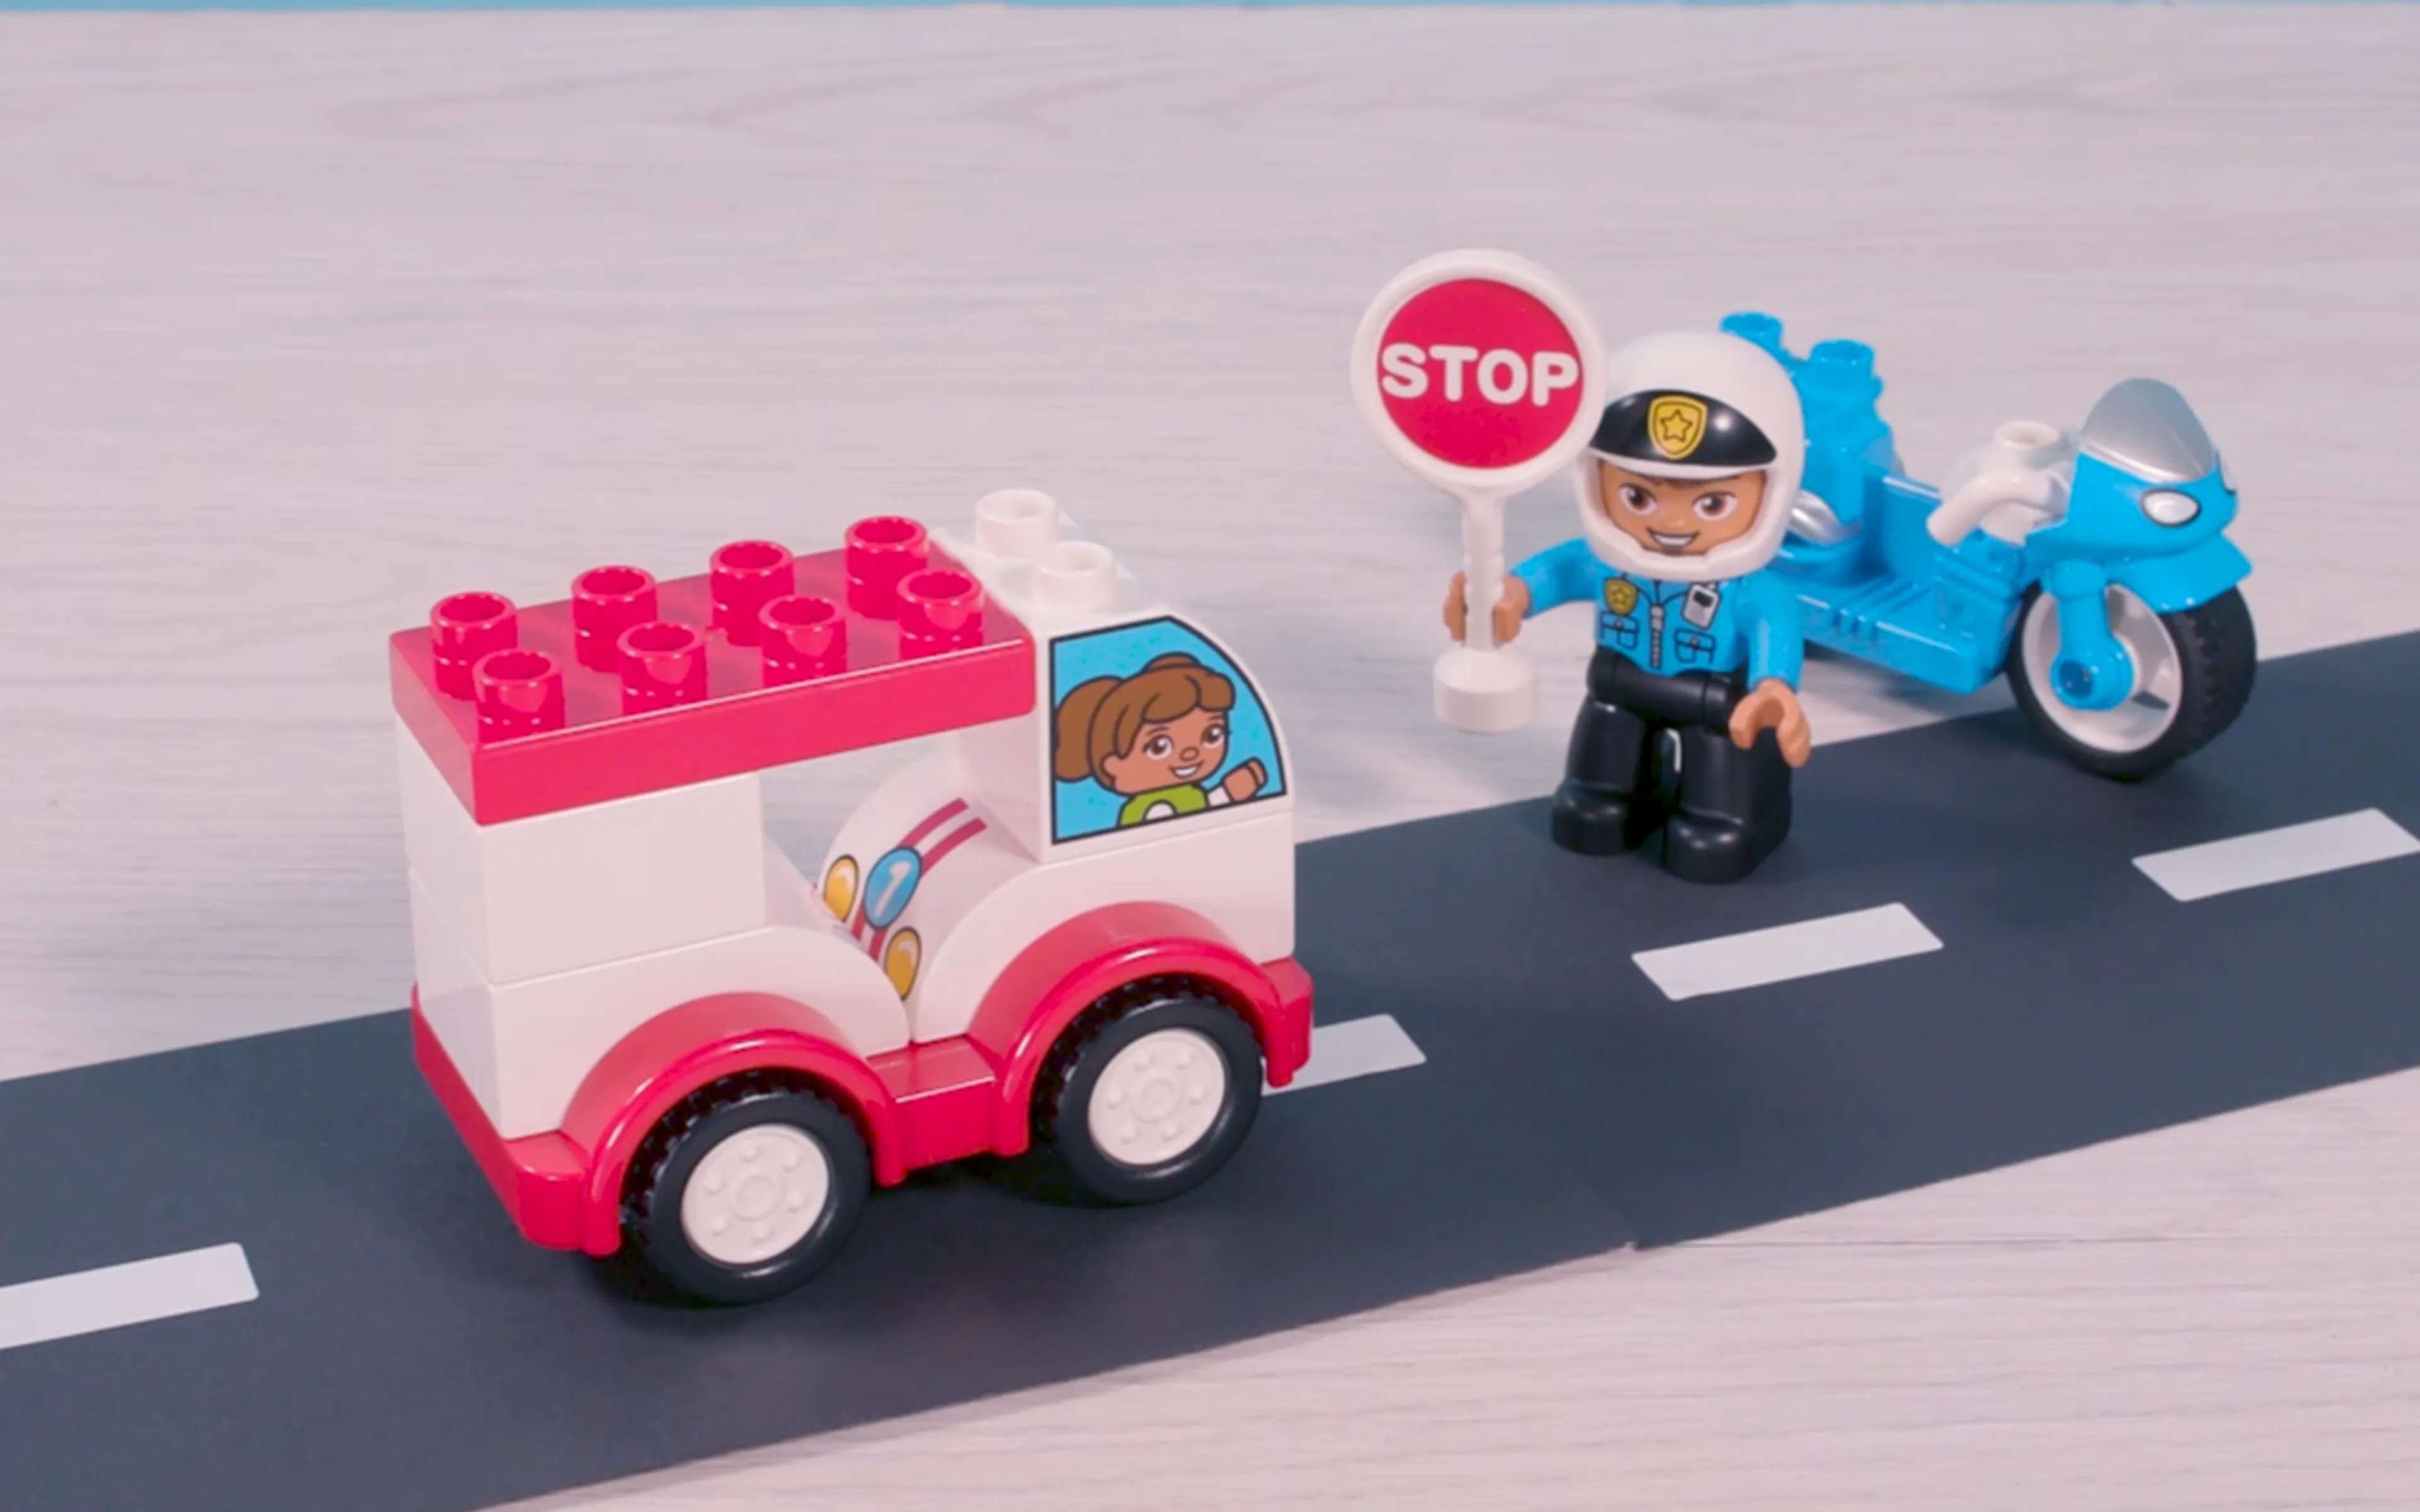 Une image de policier LEGO DUPLO tenant un panneau STOP